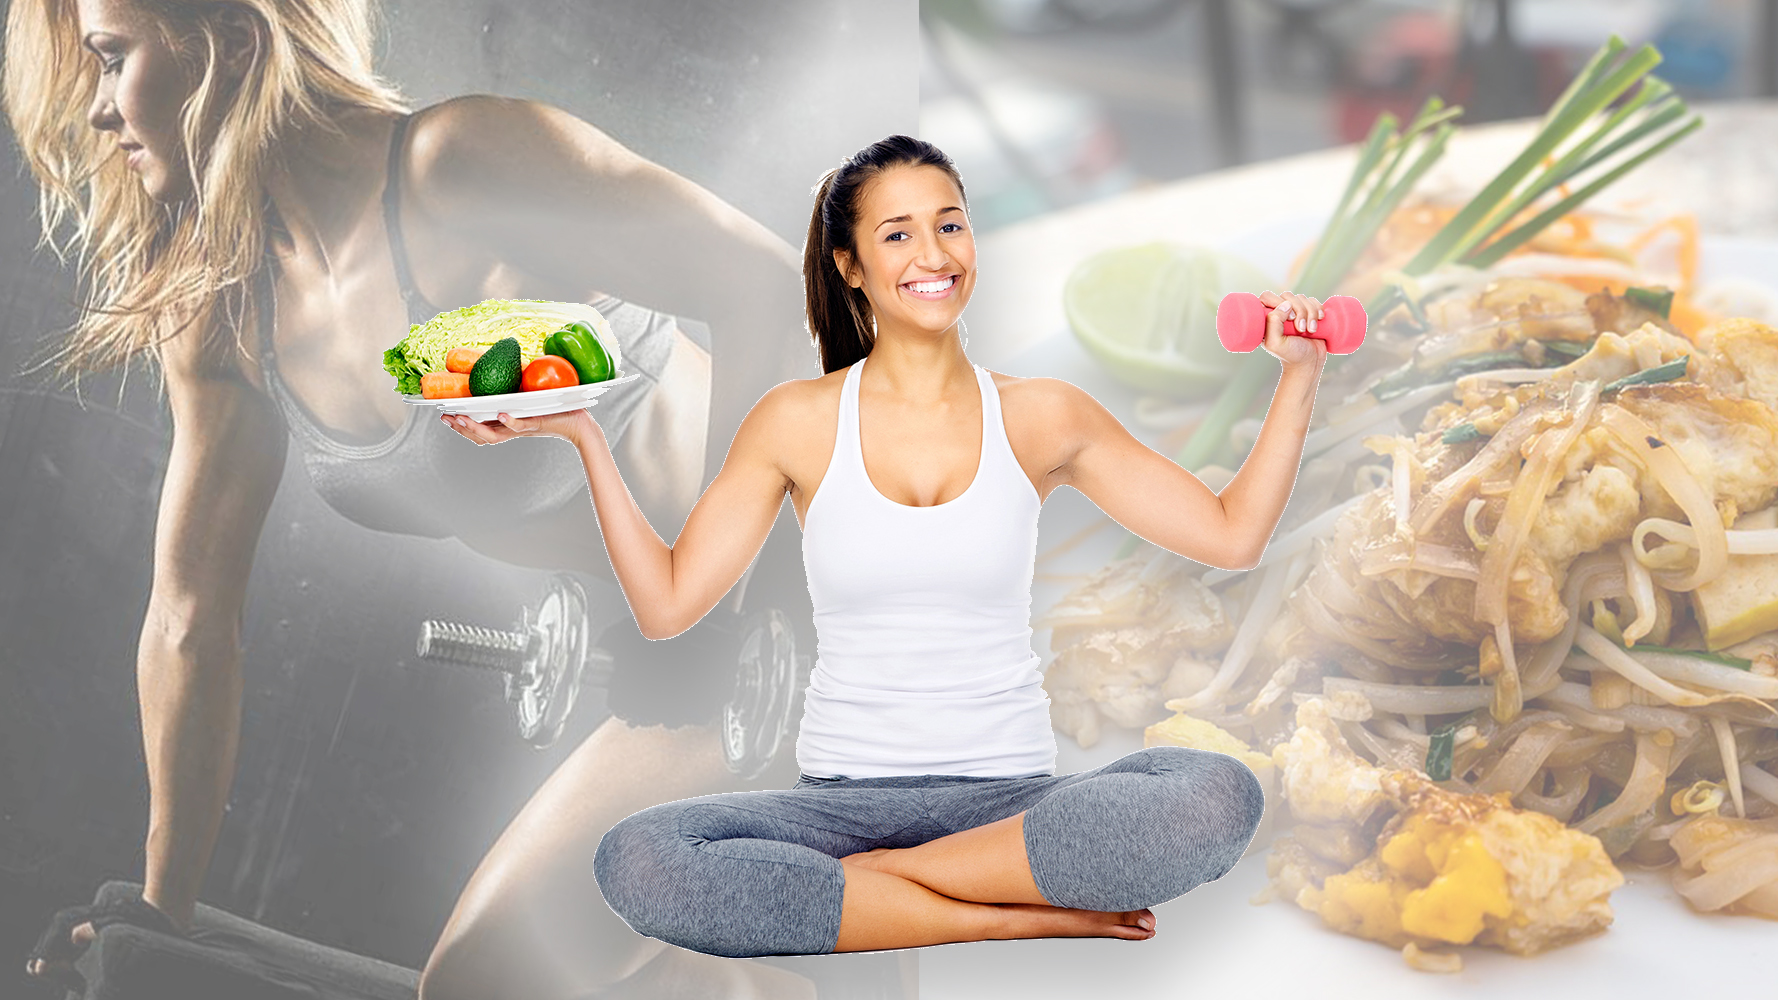 Lehet fogyni csak edzéssel vagy fontos a jól összeállított étrend is?